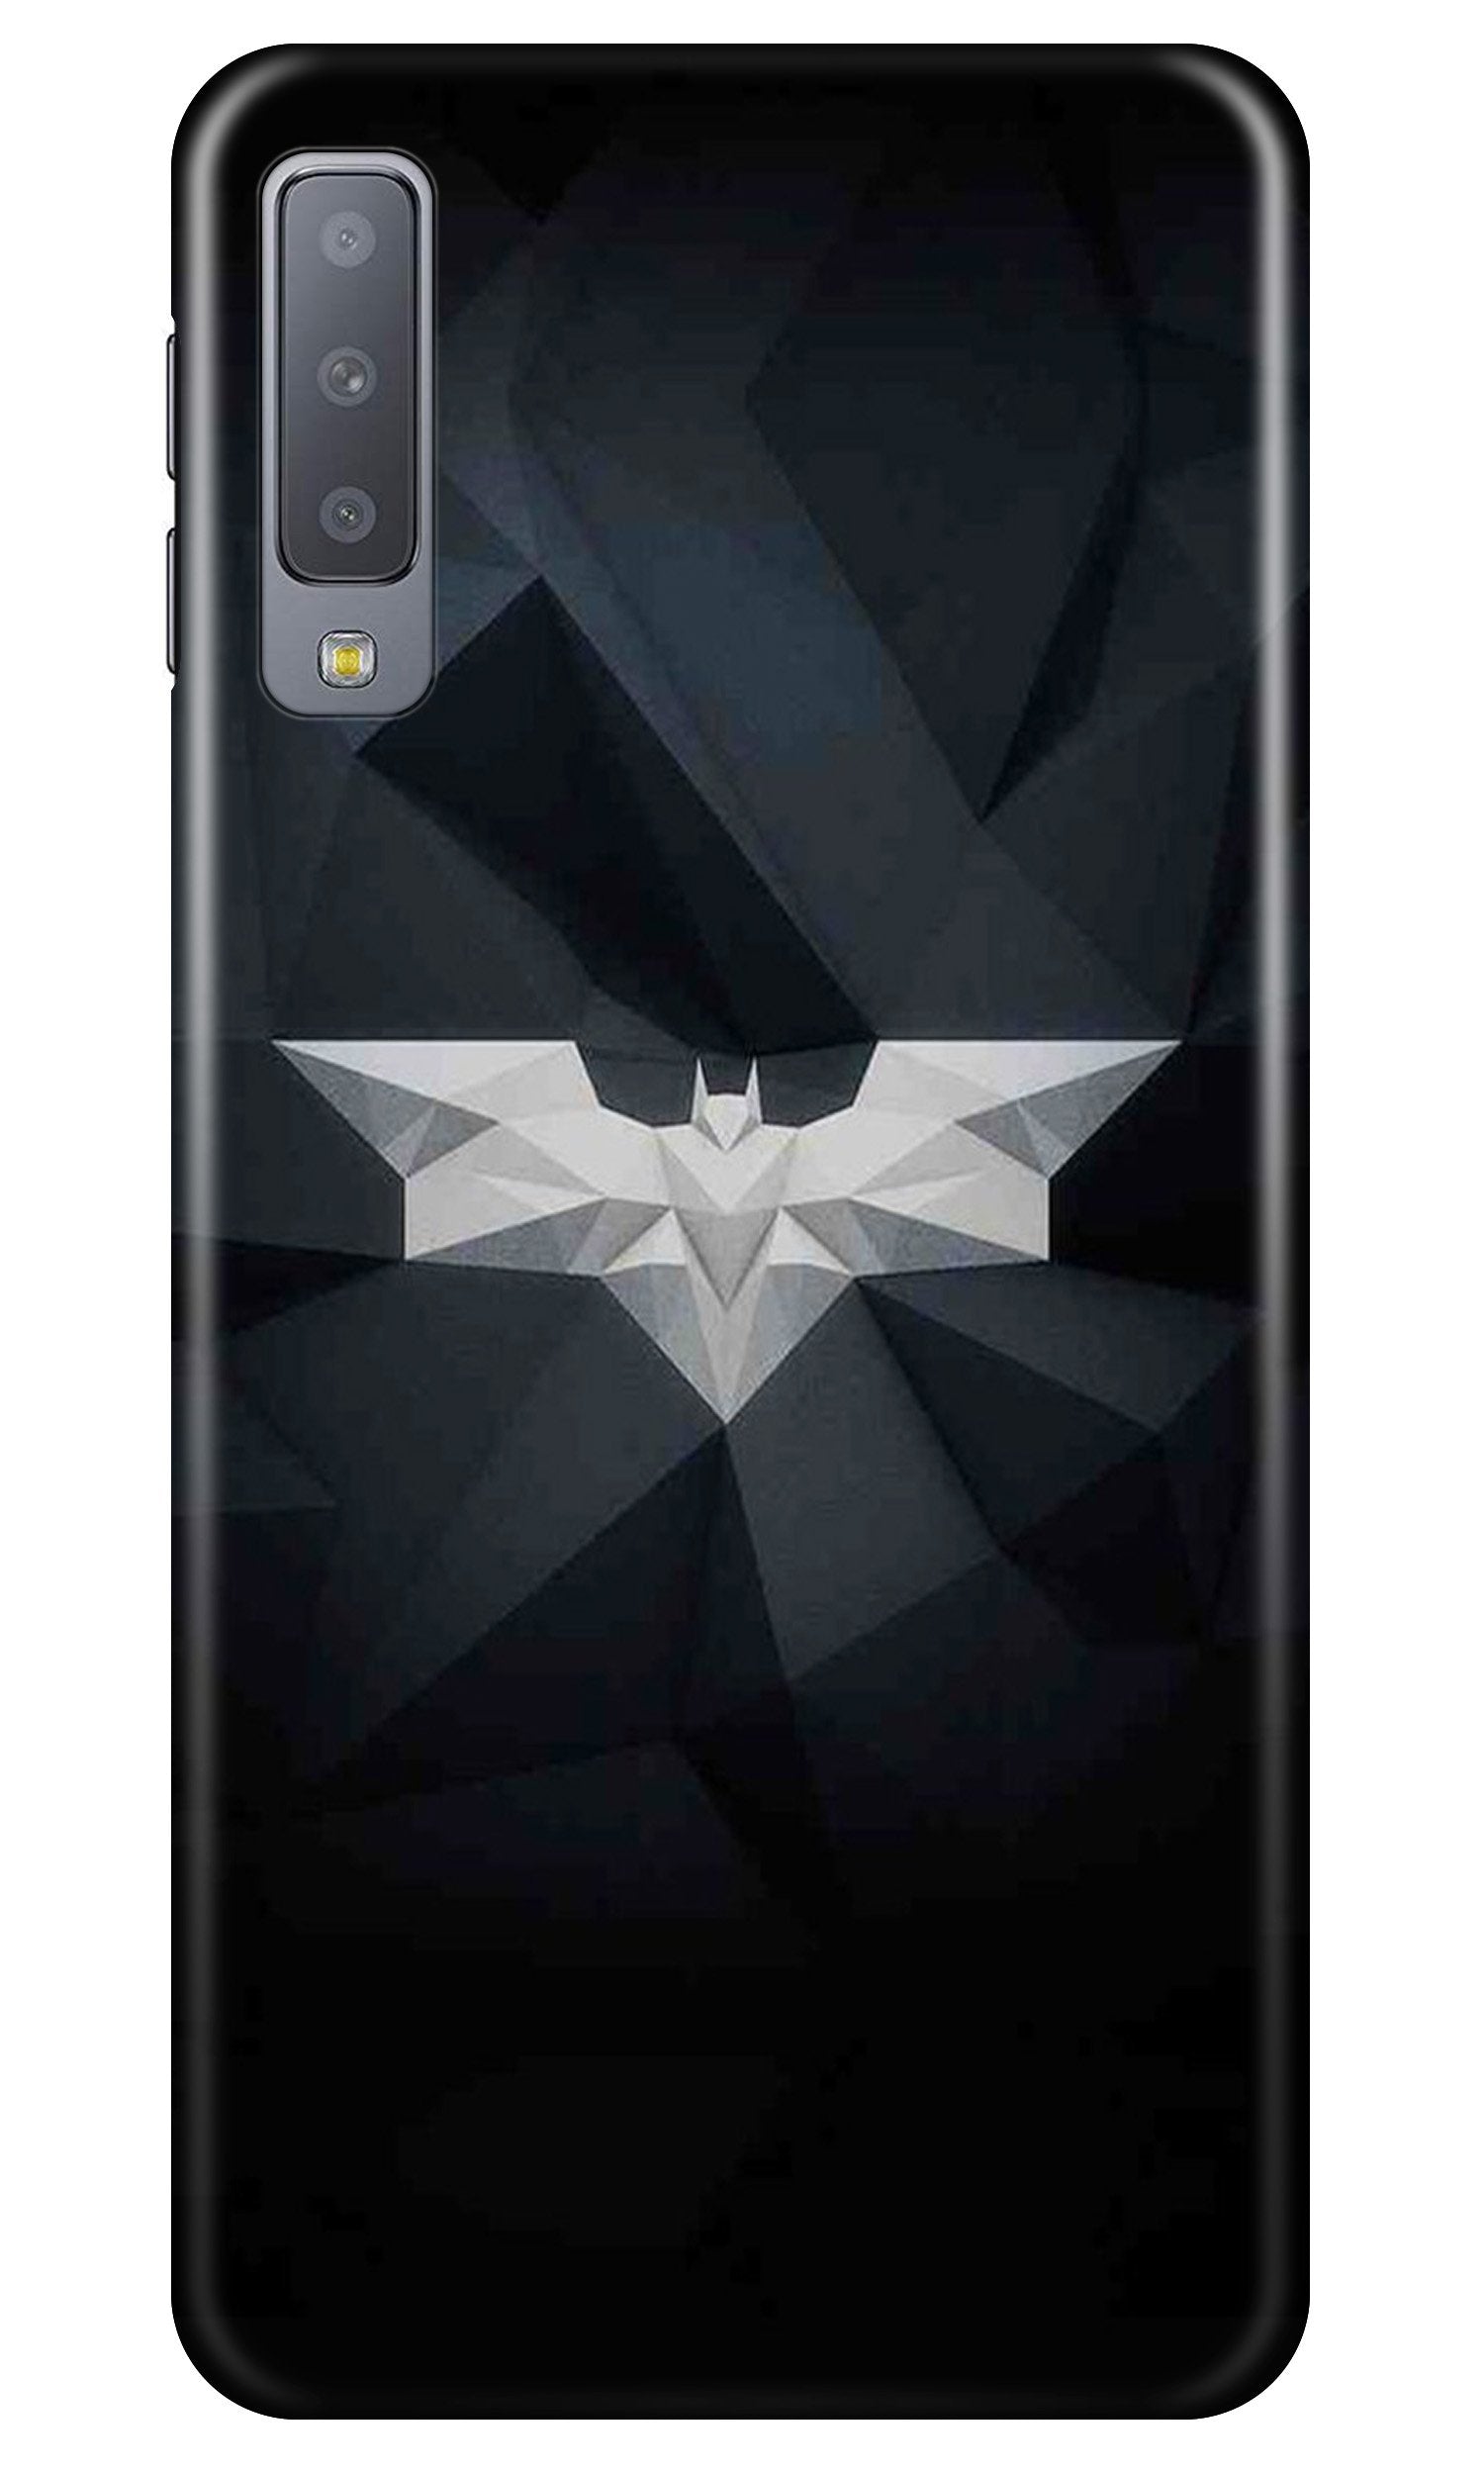 Batman Case for Samung Galaxy A70s